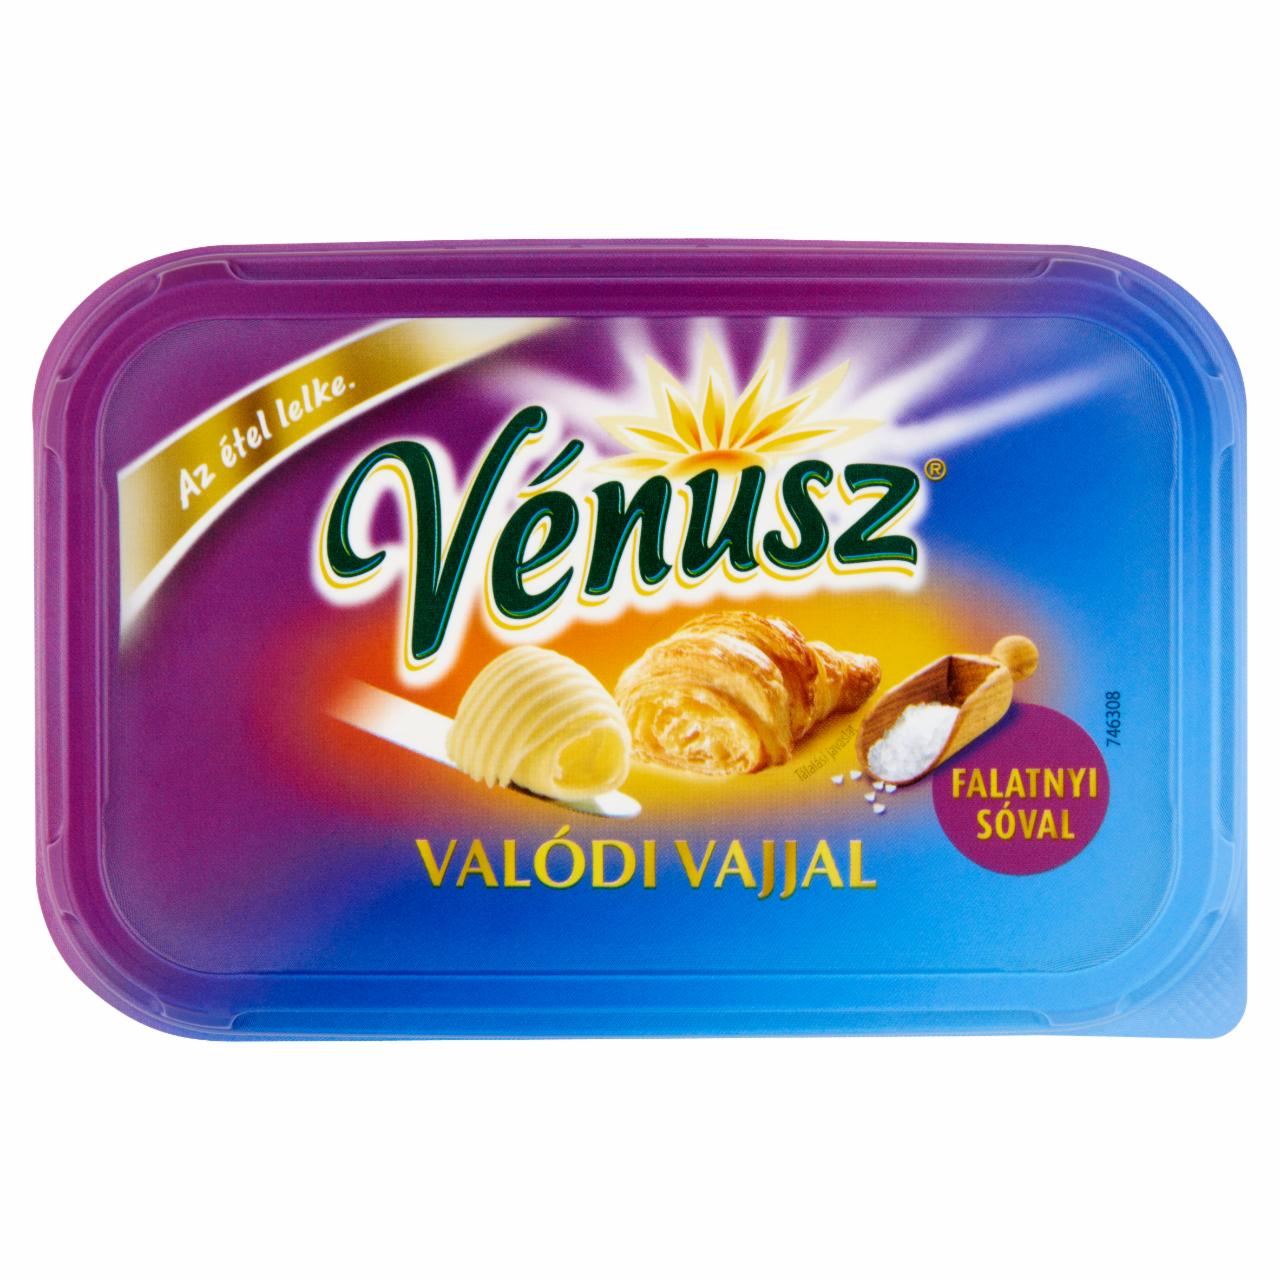 Képek - Vénusz Valódi Vajjal Falatnyi sóval margarin és vaj csökkentett zsírtartalmú keveréke 400 g